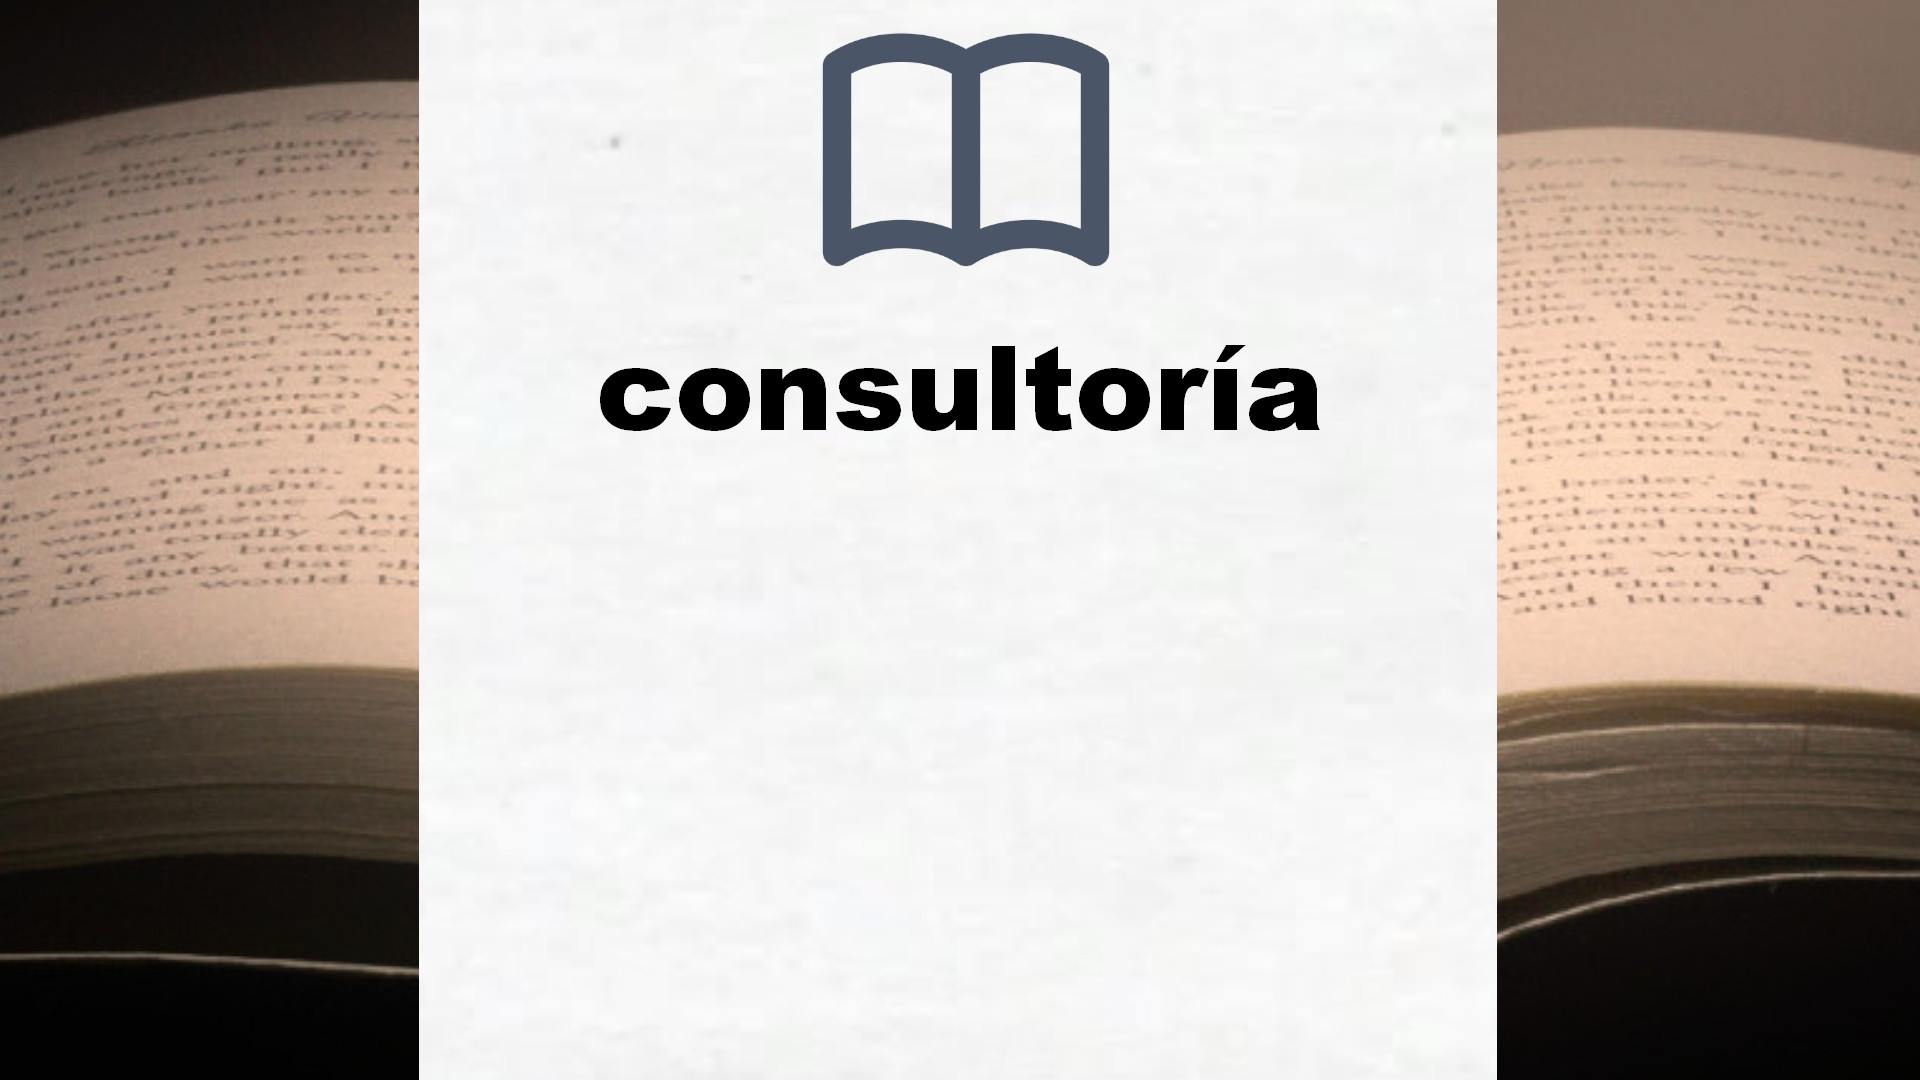 Libros sobre consultoría